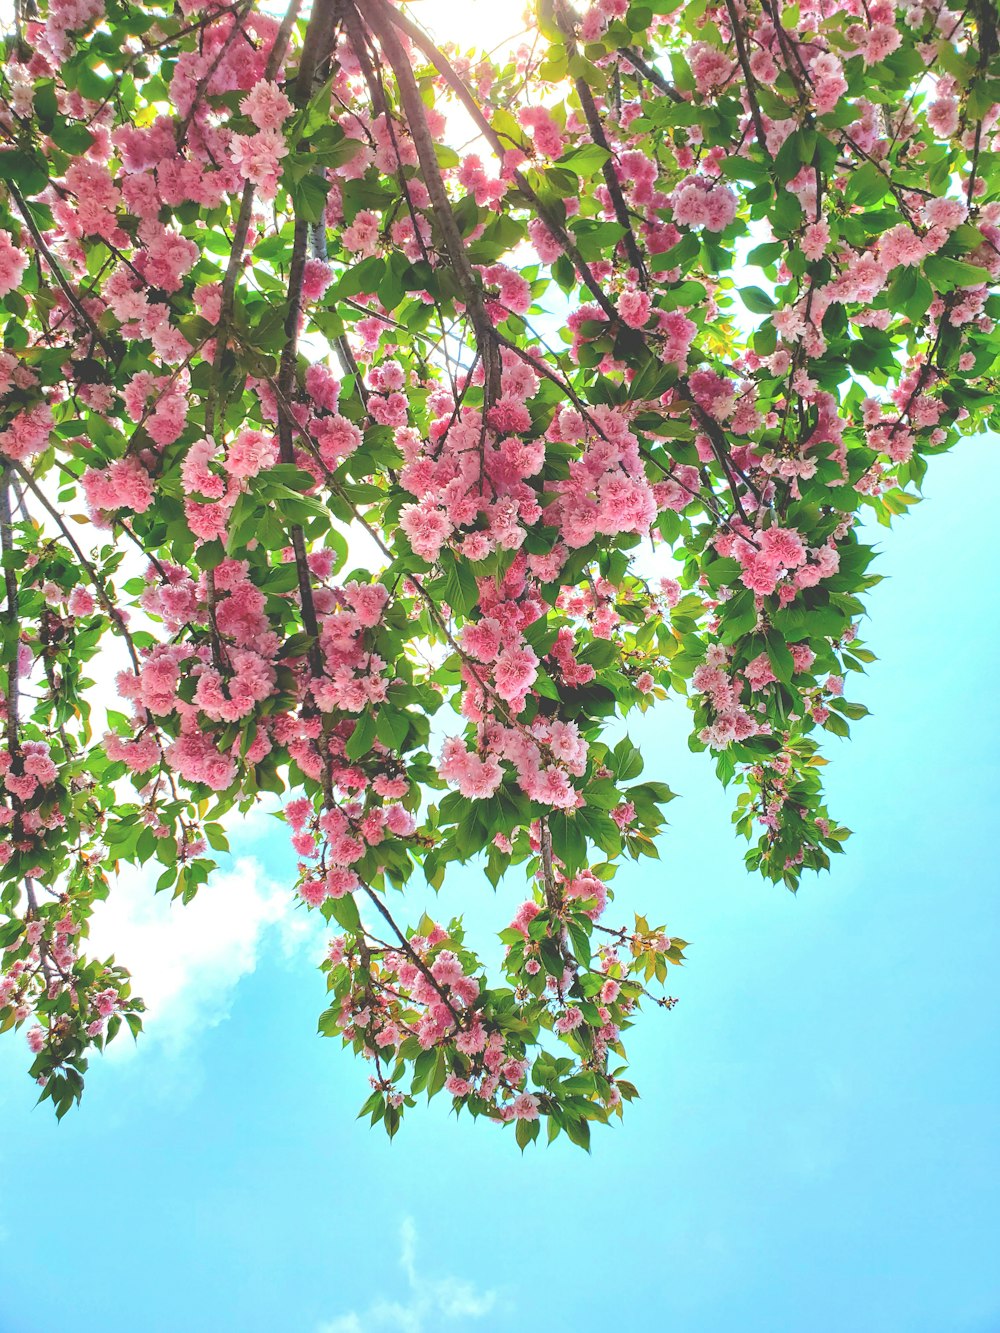 Des fleurs roses fleurissent sur les branches d’un arbre